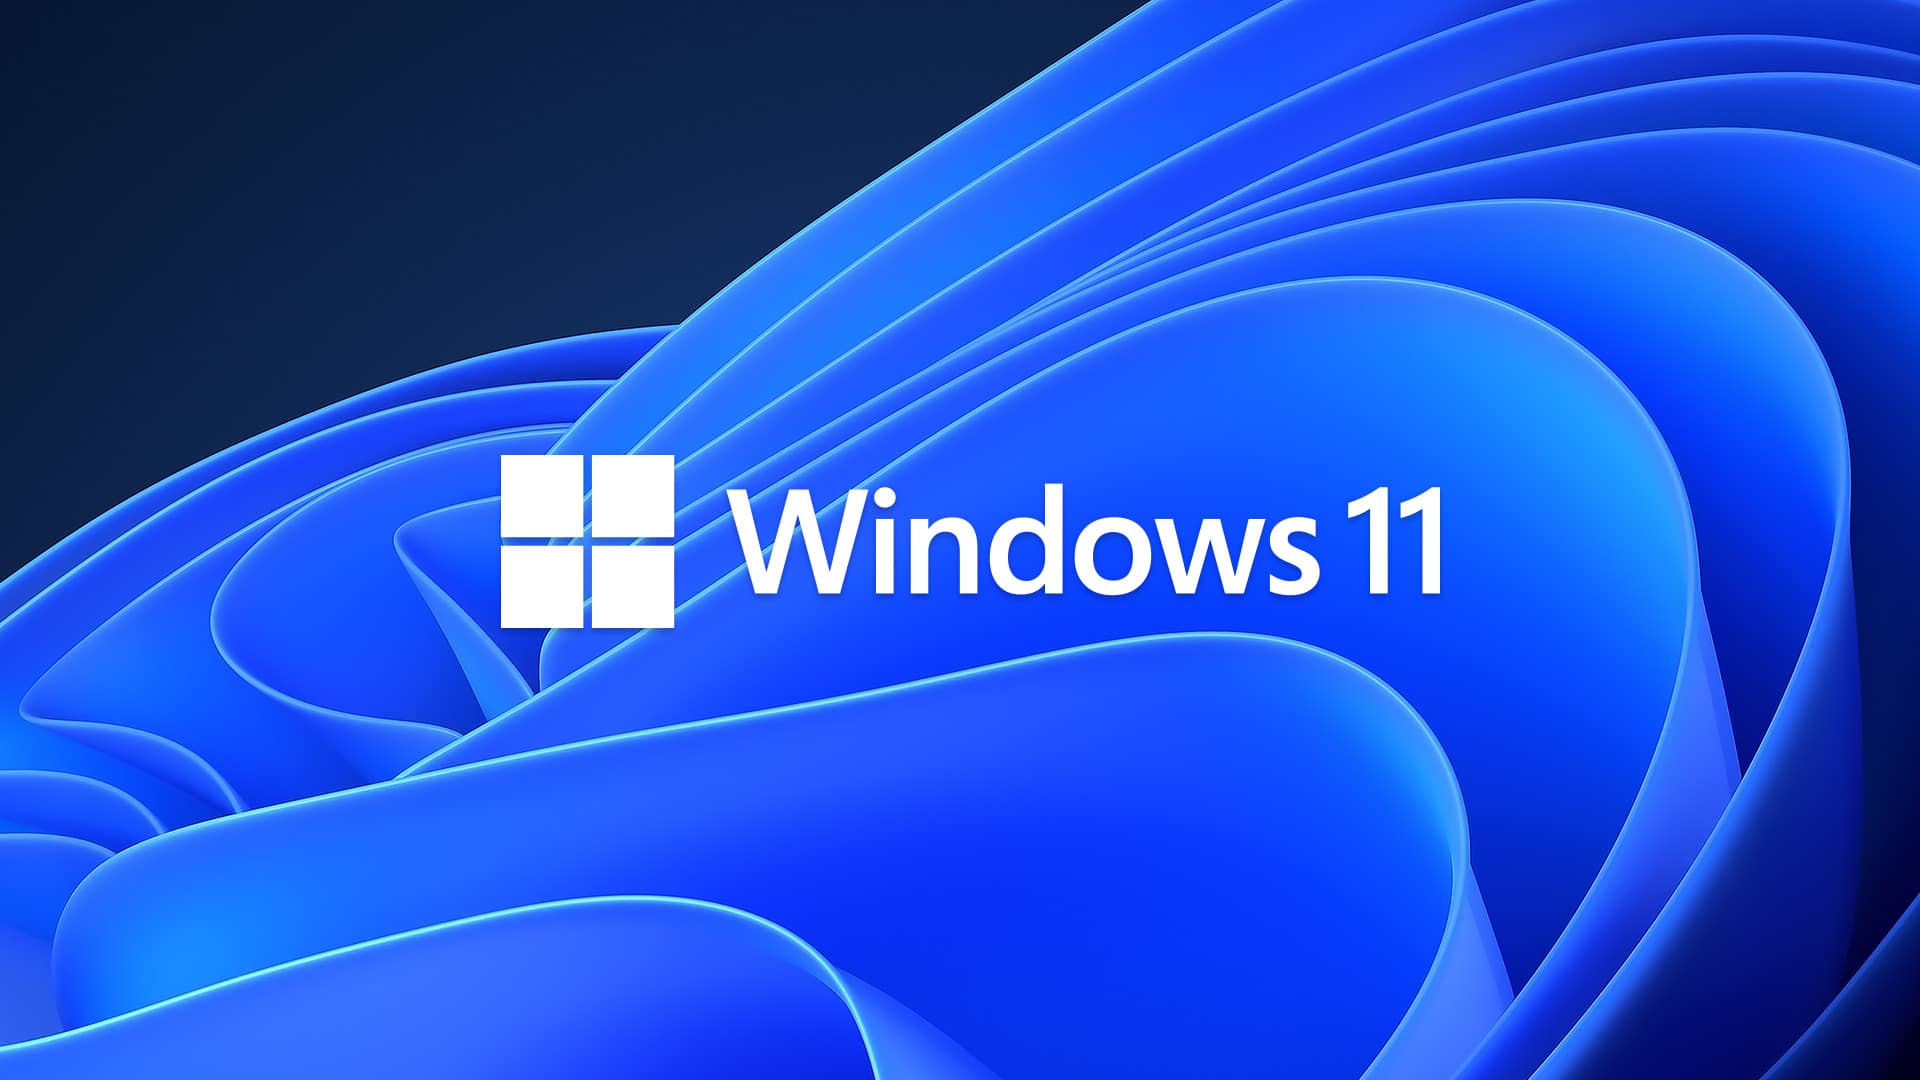 Cambiare browser in Windows 11 diventerà più semplice thumbnail